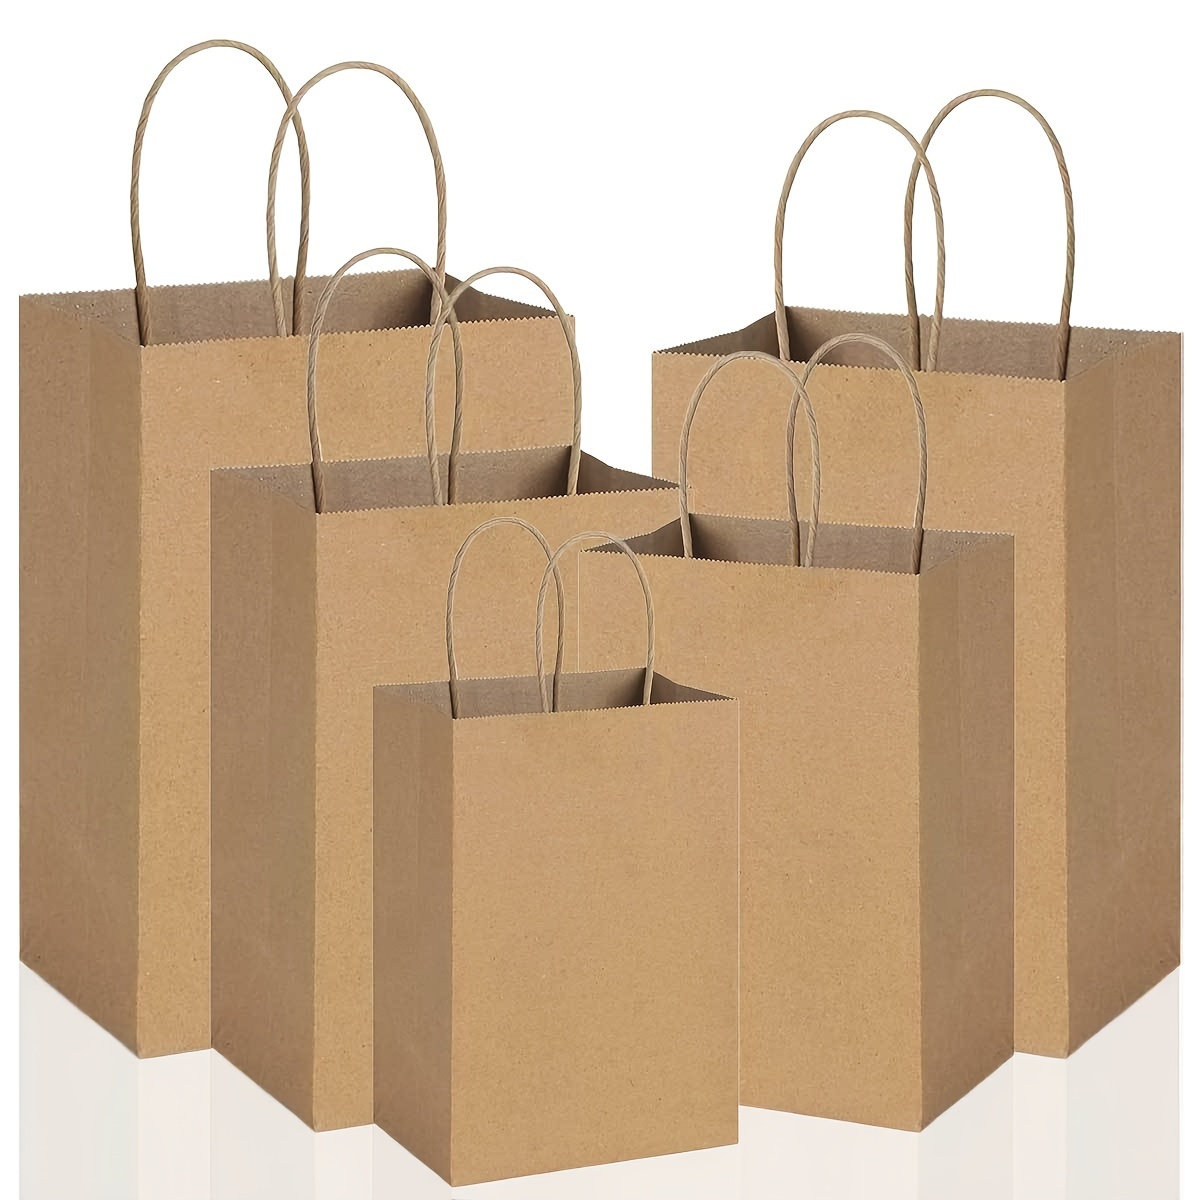  BagDream 100 bolsas de regalo de 5.25 x 3.25 x 8 pulgadas,  pequeñas bolsas de papel kraft con asas, papel kraft marrón a granel,  compras, boda, fiesta de cumpleaños, bolsas de